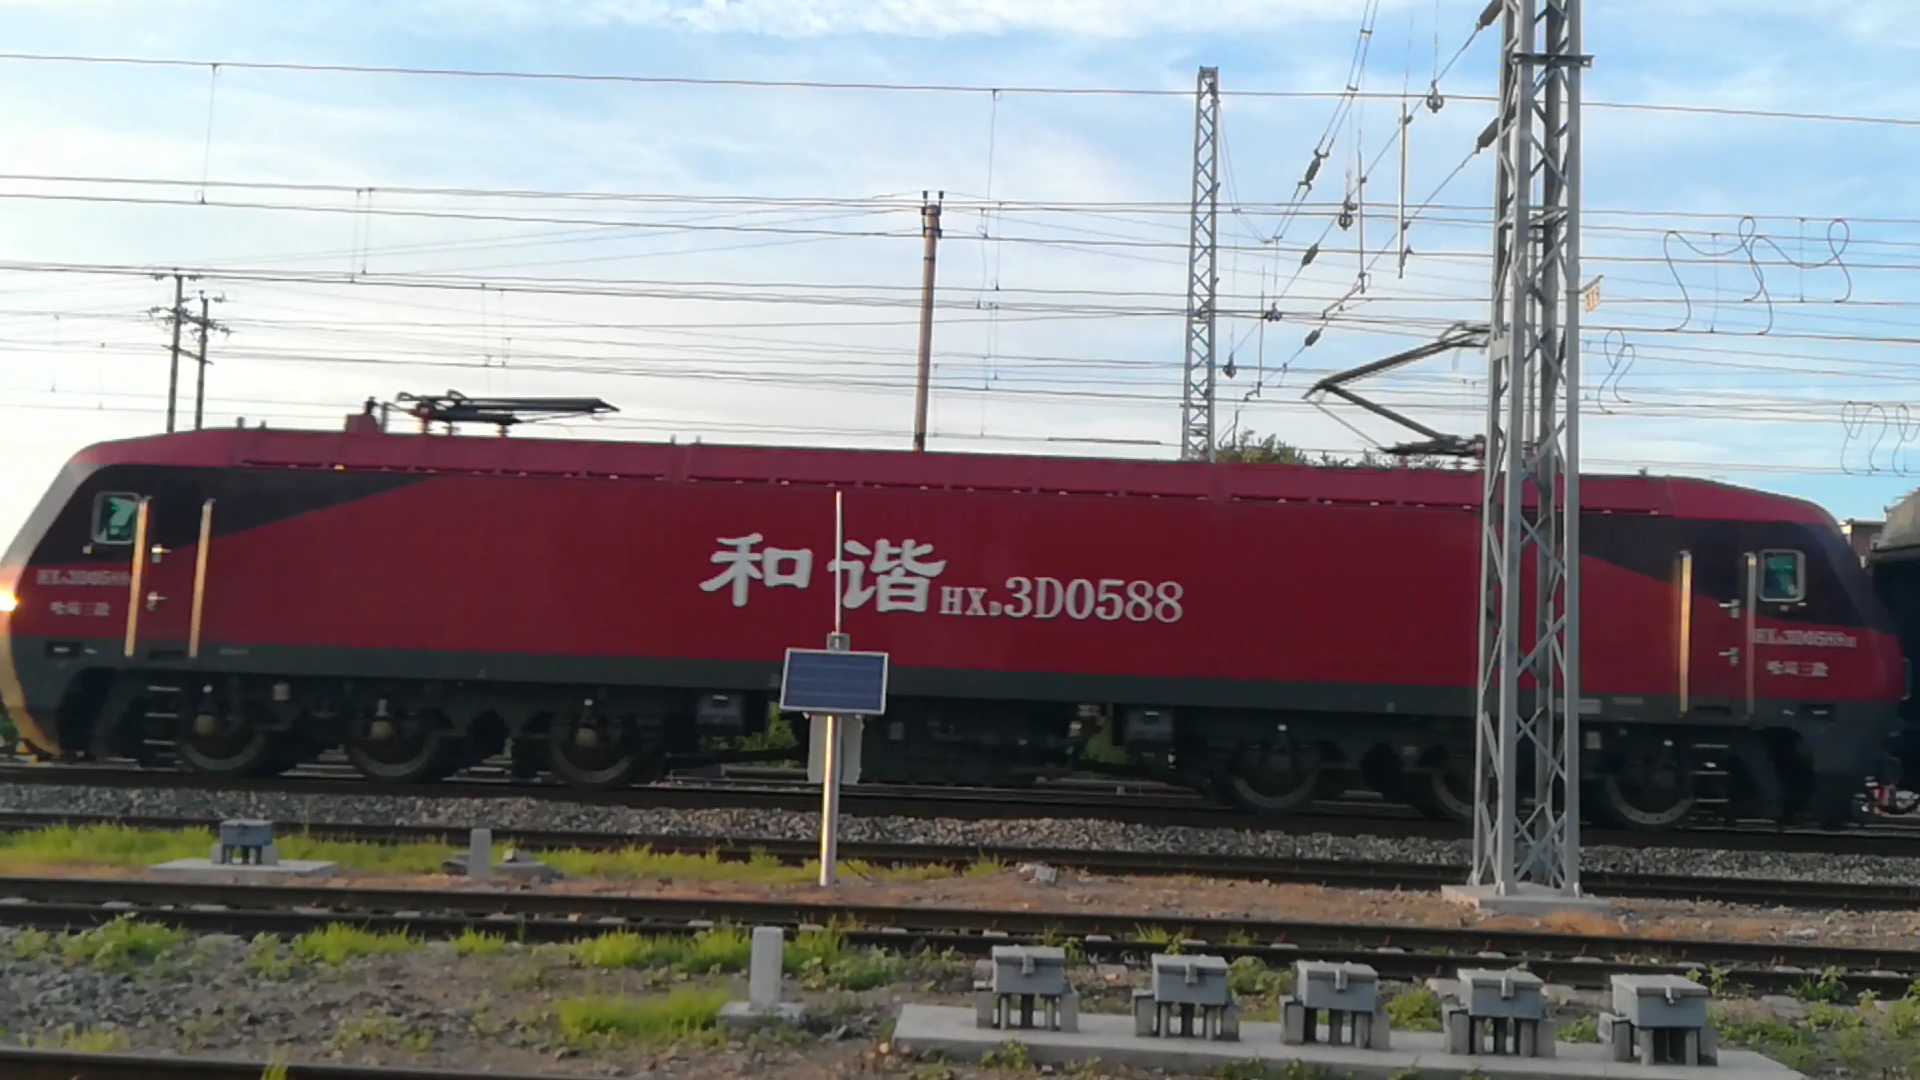 HXD3D0588號機車牽引K19次國際列車經由濱洲鐵路